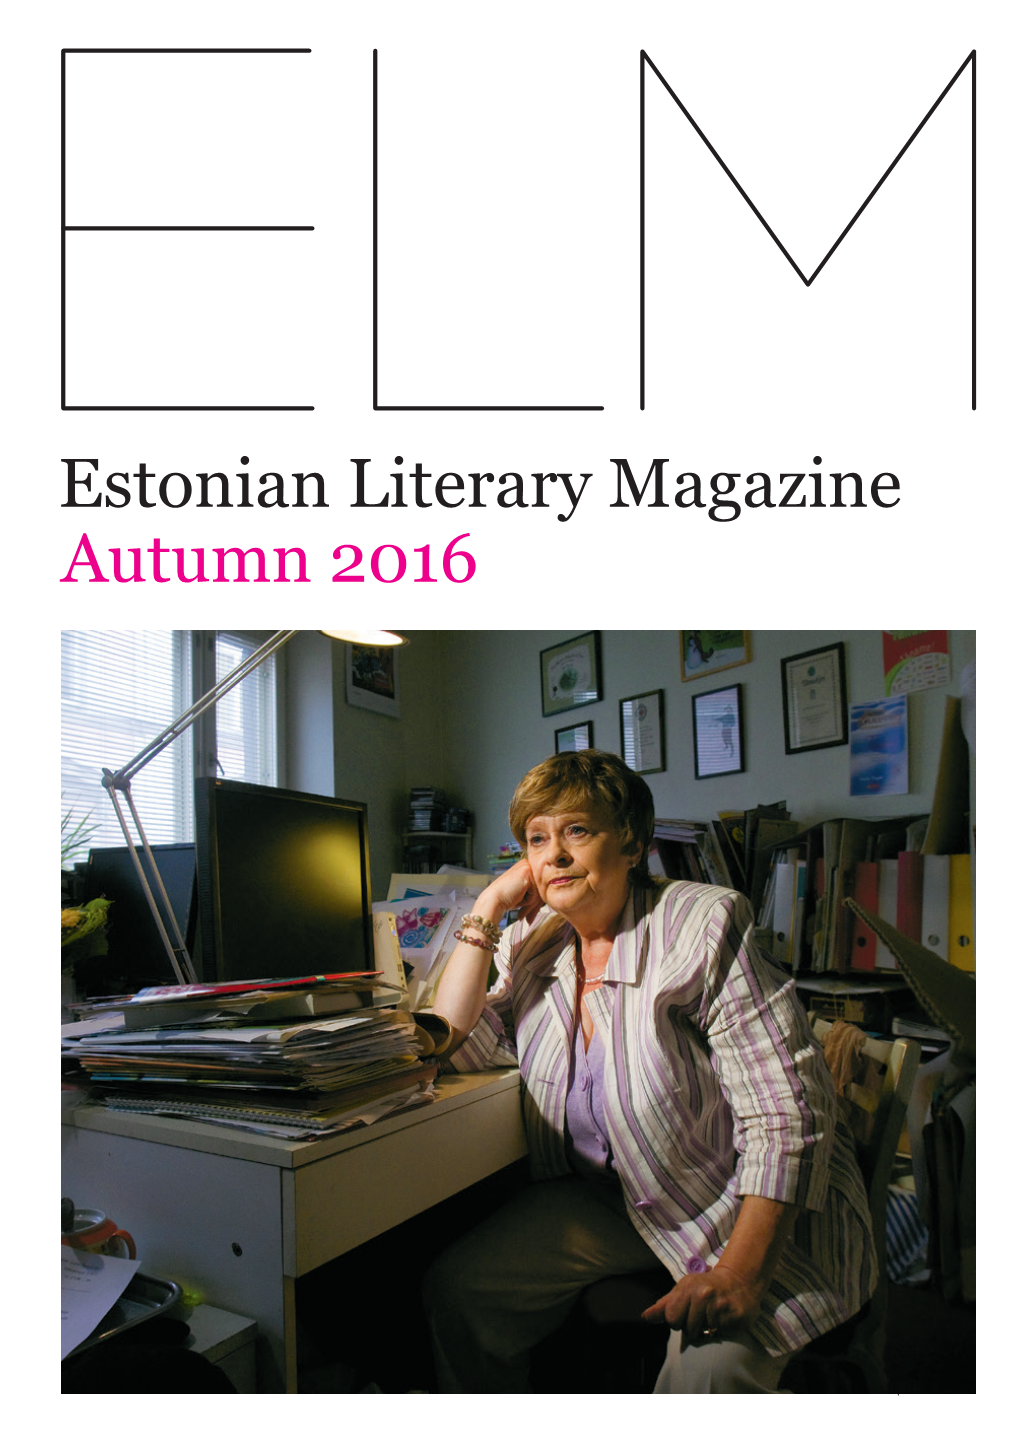 Estonian Literary Magazine Autumn 2016